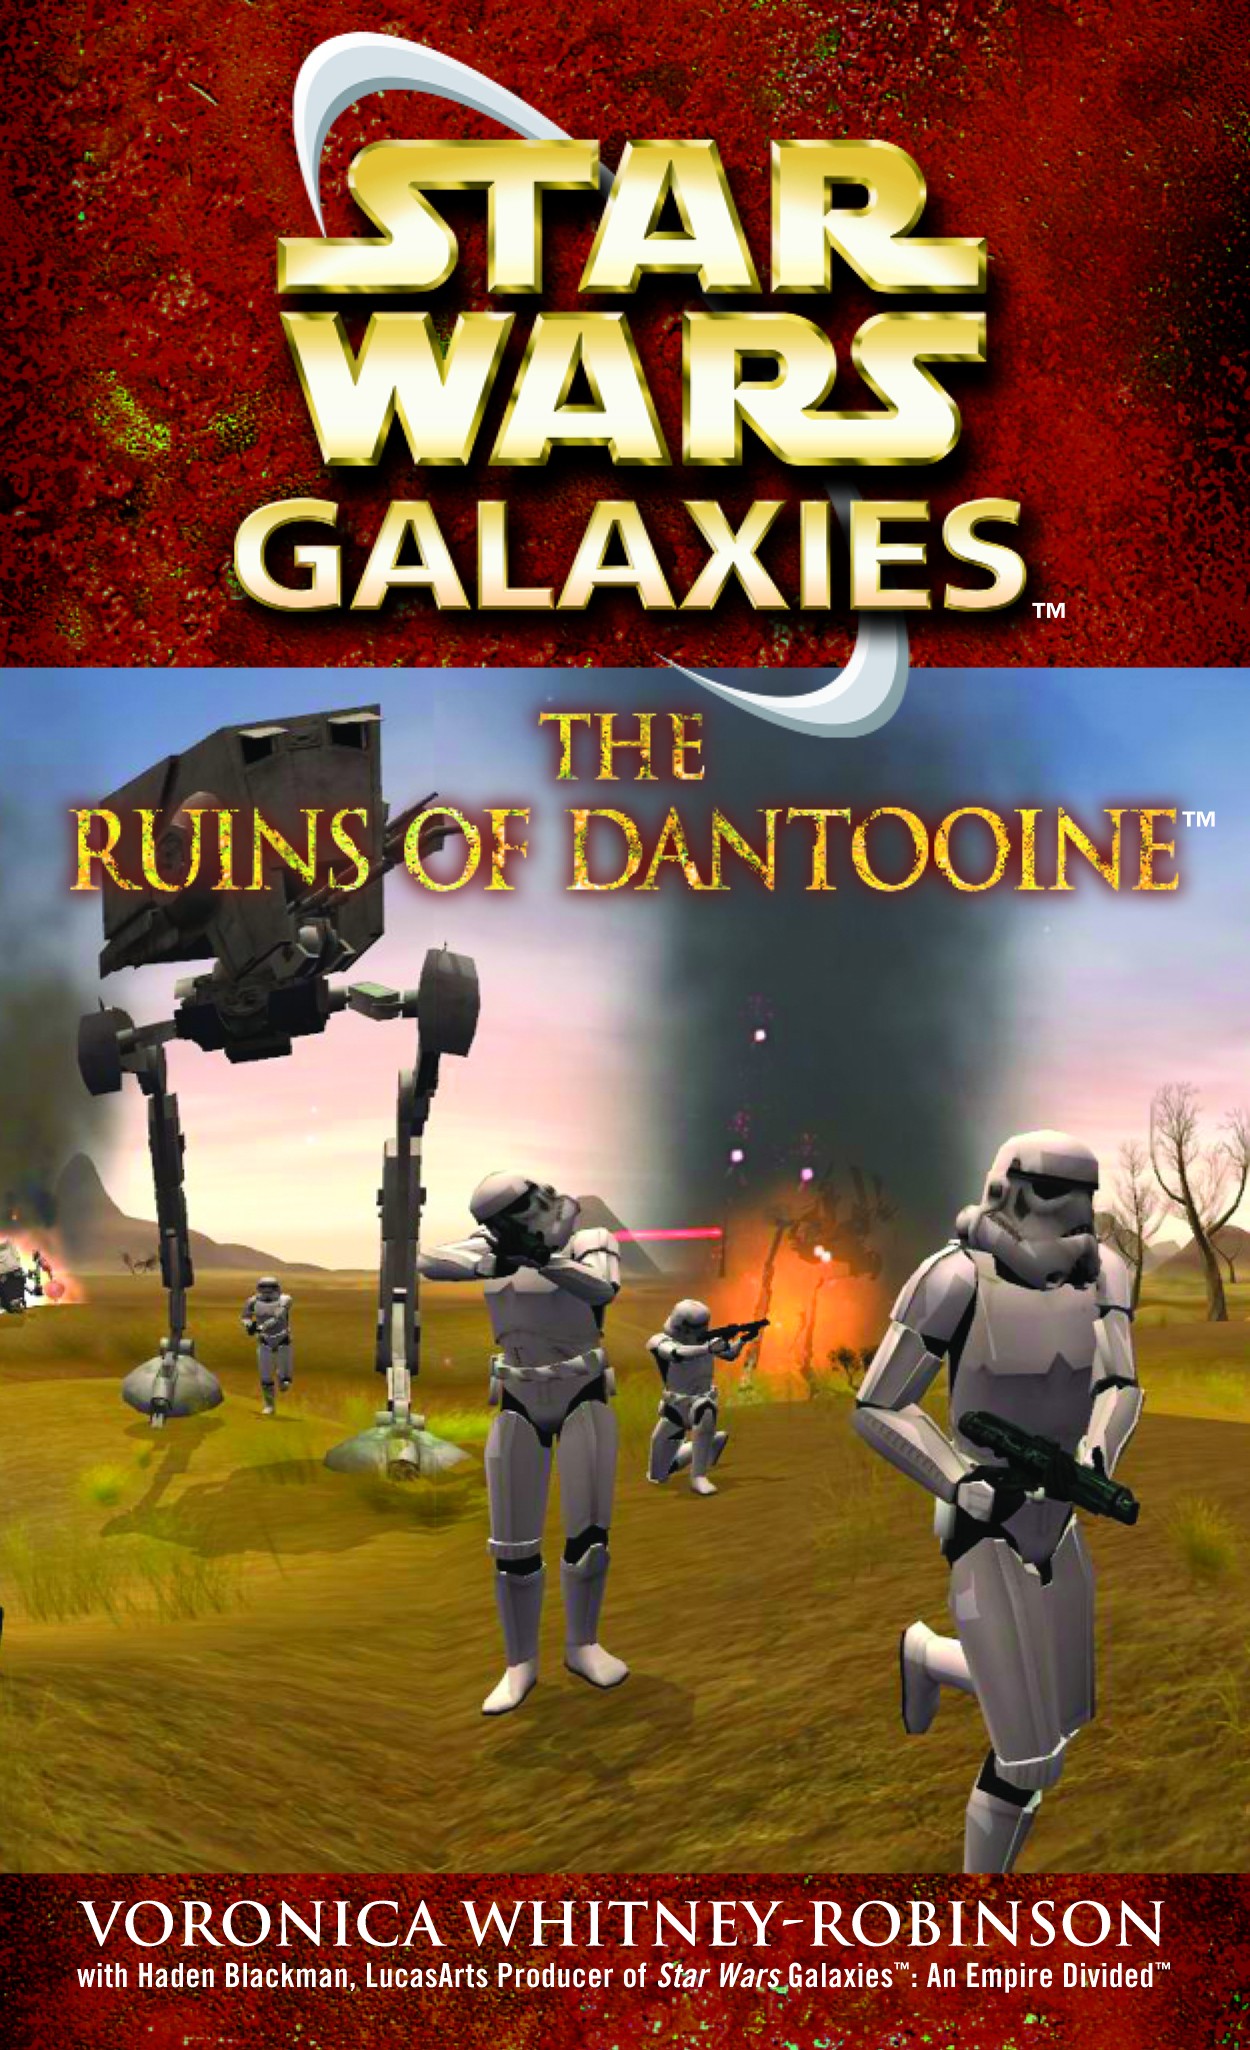 Okładka wydania oryginalnego — The Ruins of Dantooine.